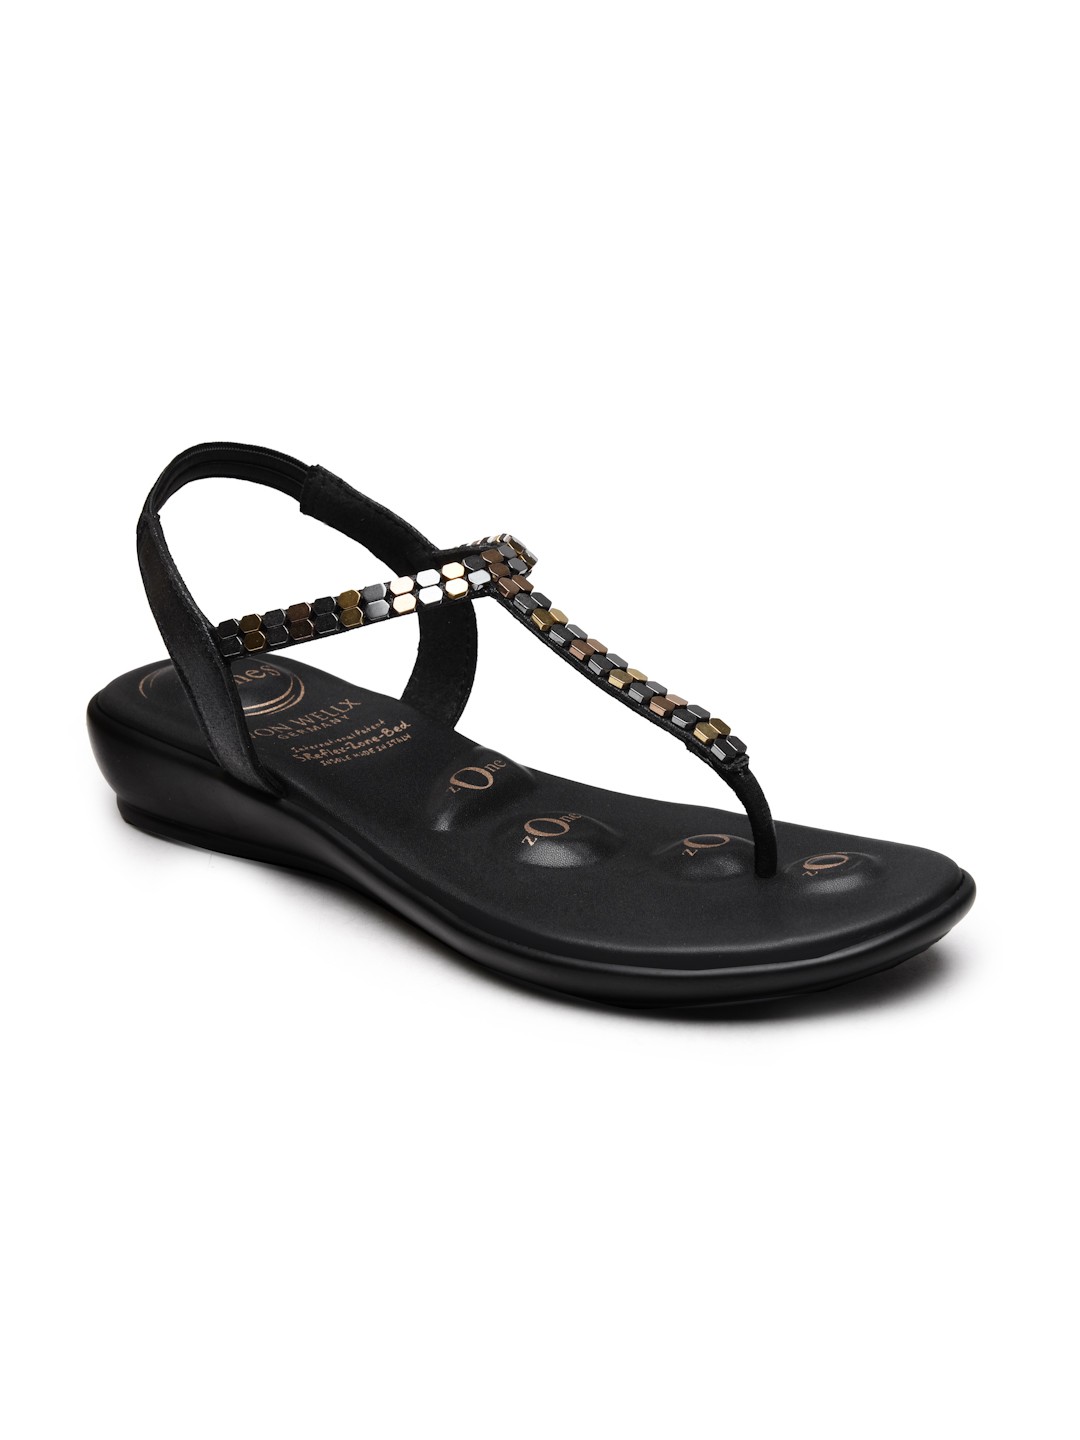 Buy Von Wellx Germany Comfort Women's Black Casual Sandals Regina Online in Saudi Arabia